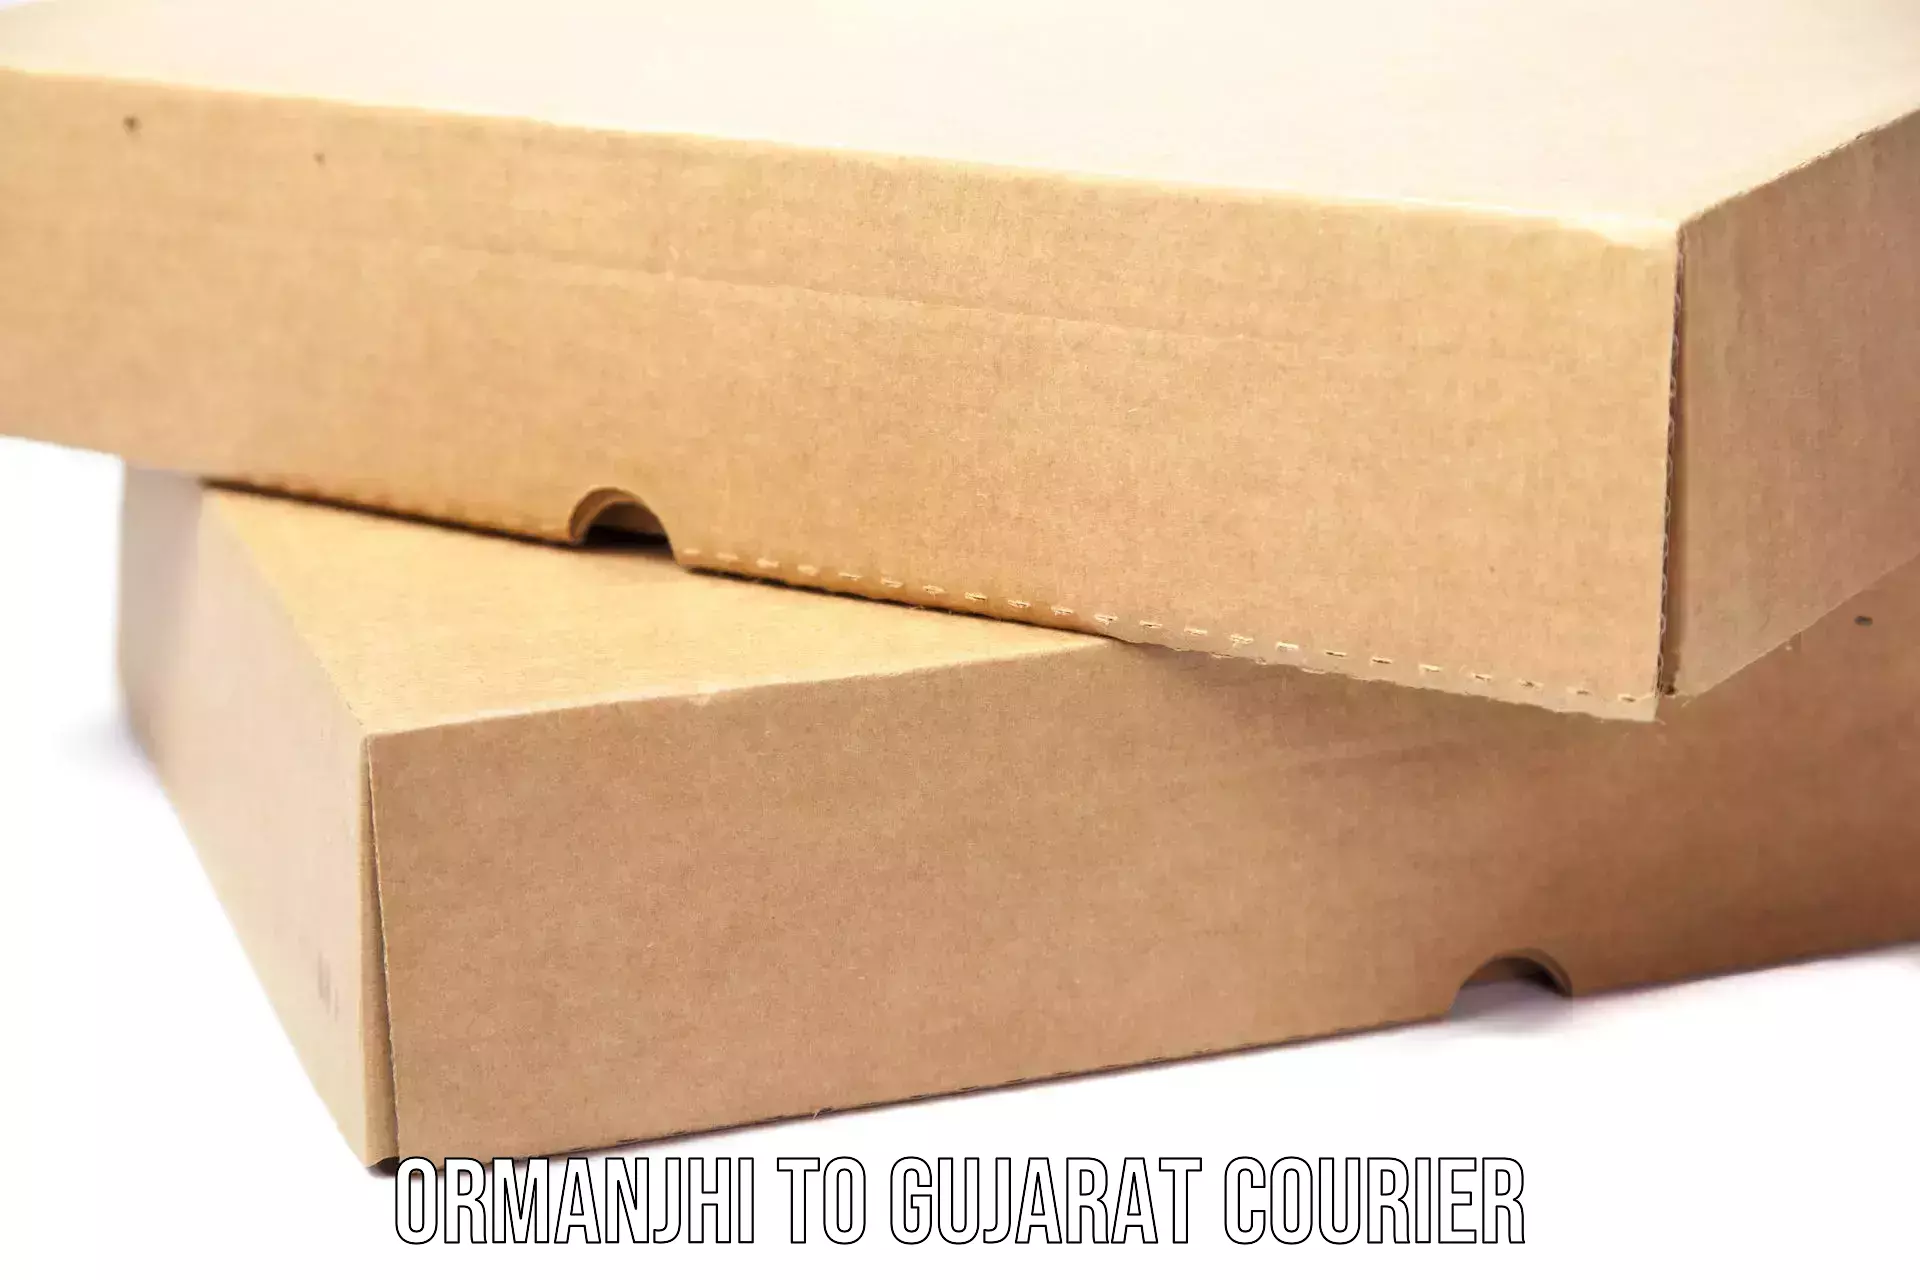 High-efficiency logistics Ormanjhi to Gujarat